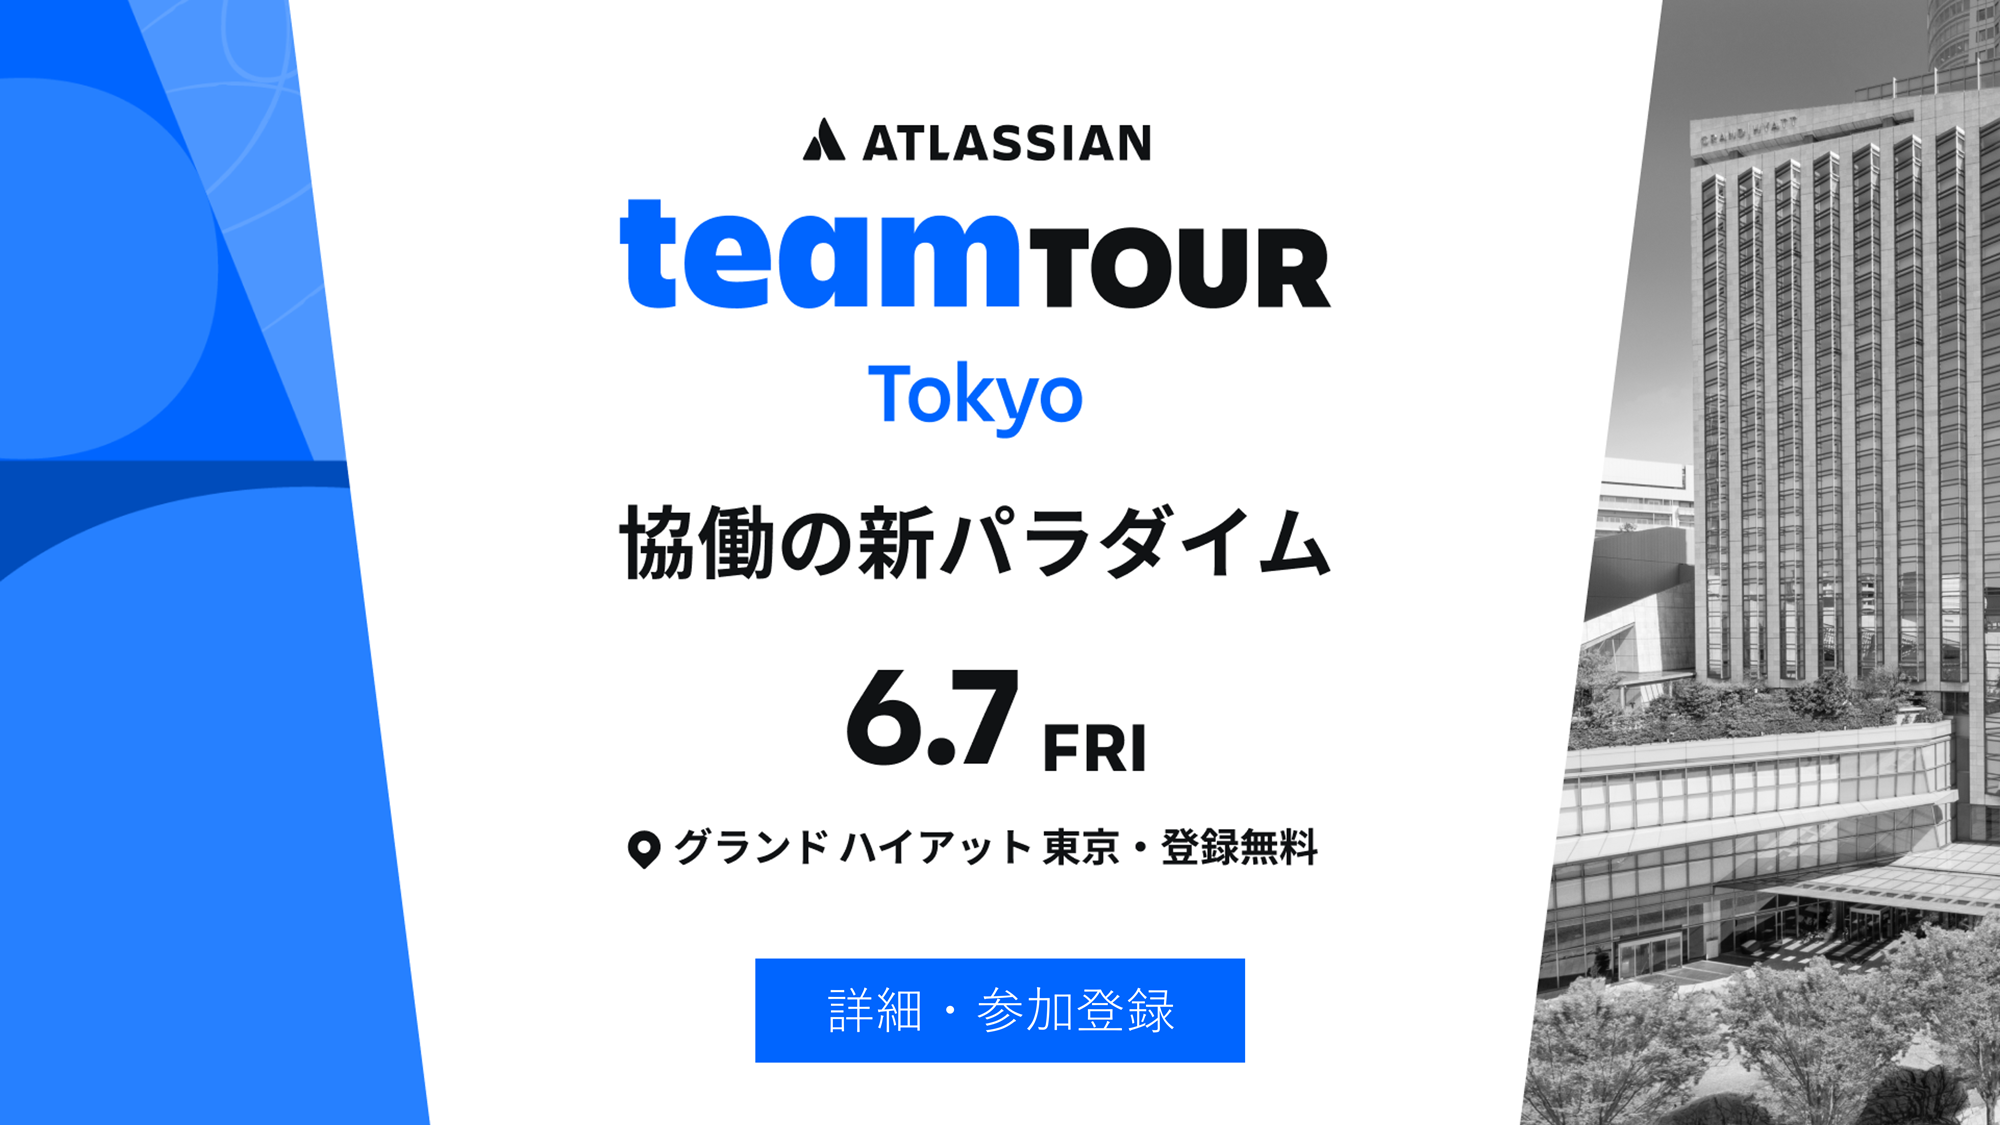 Atlassian TeamTour Tokyo